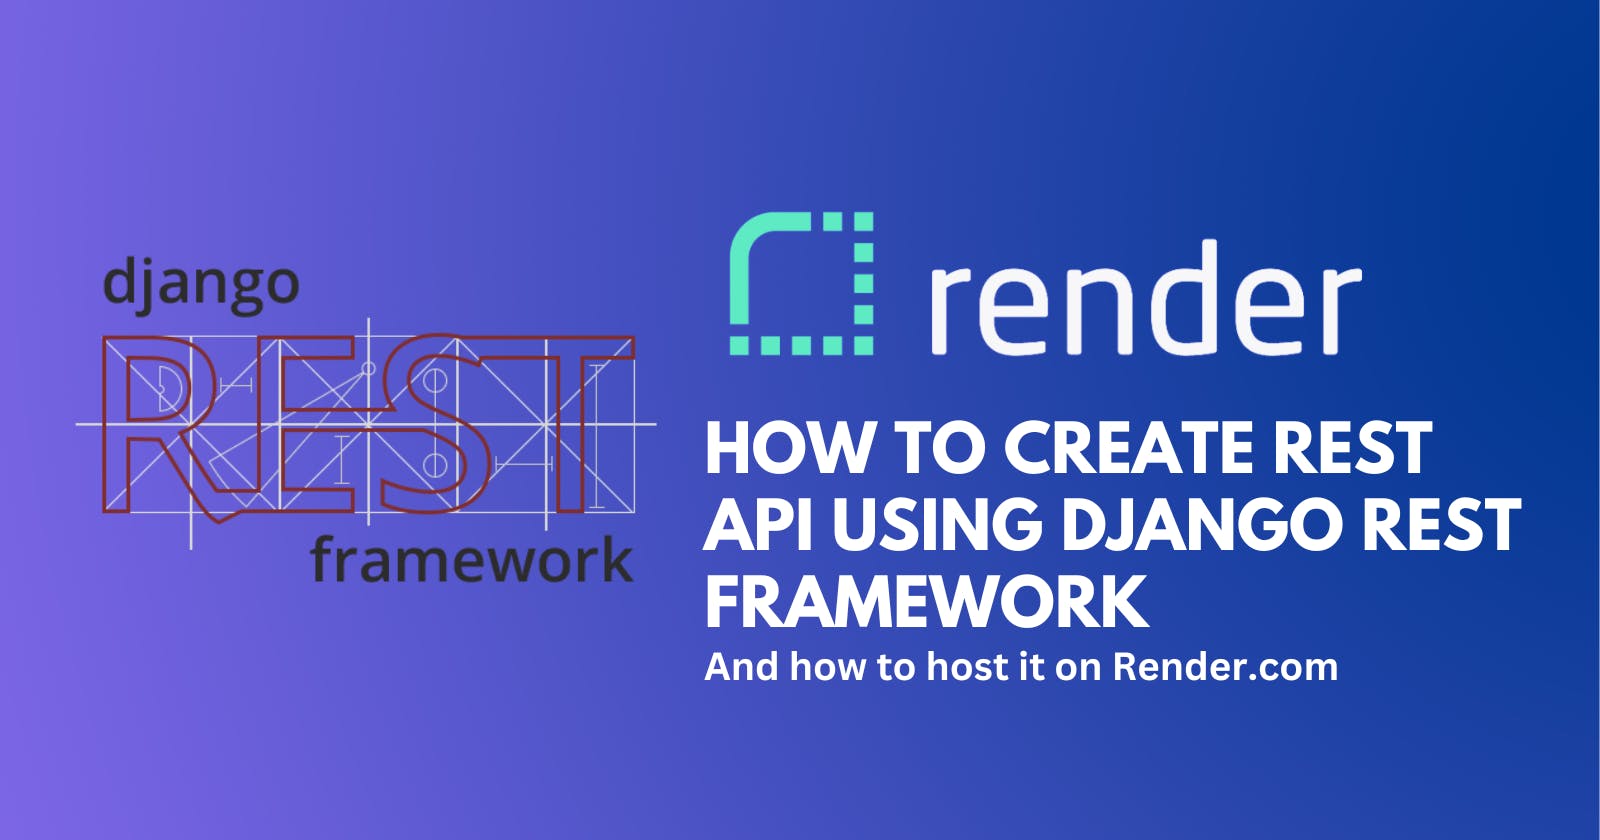 How to create REST API using Django REST framework